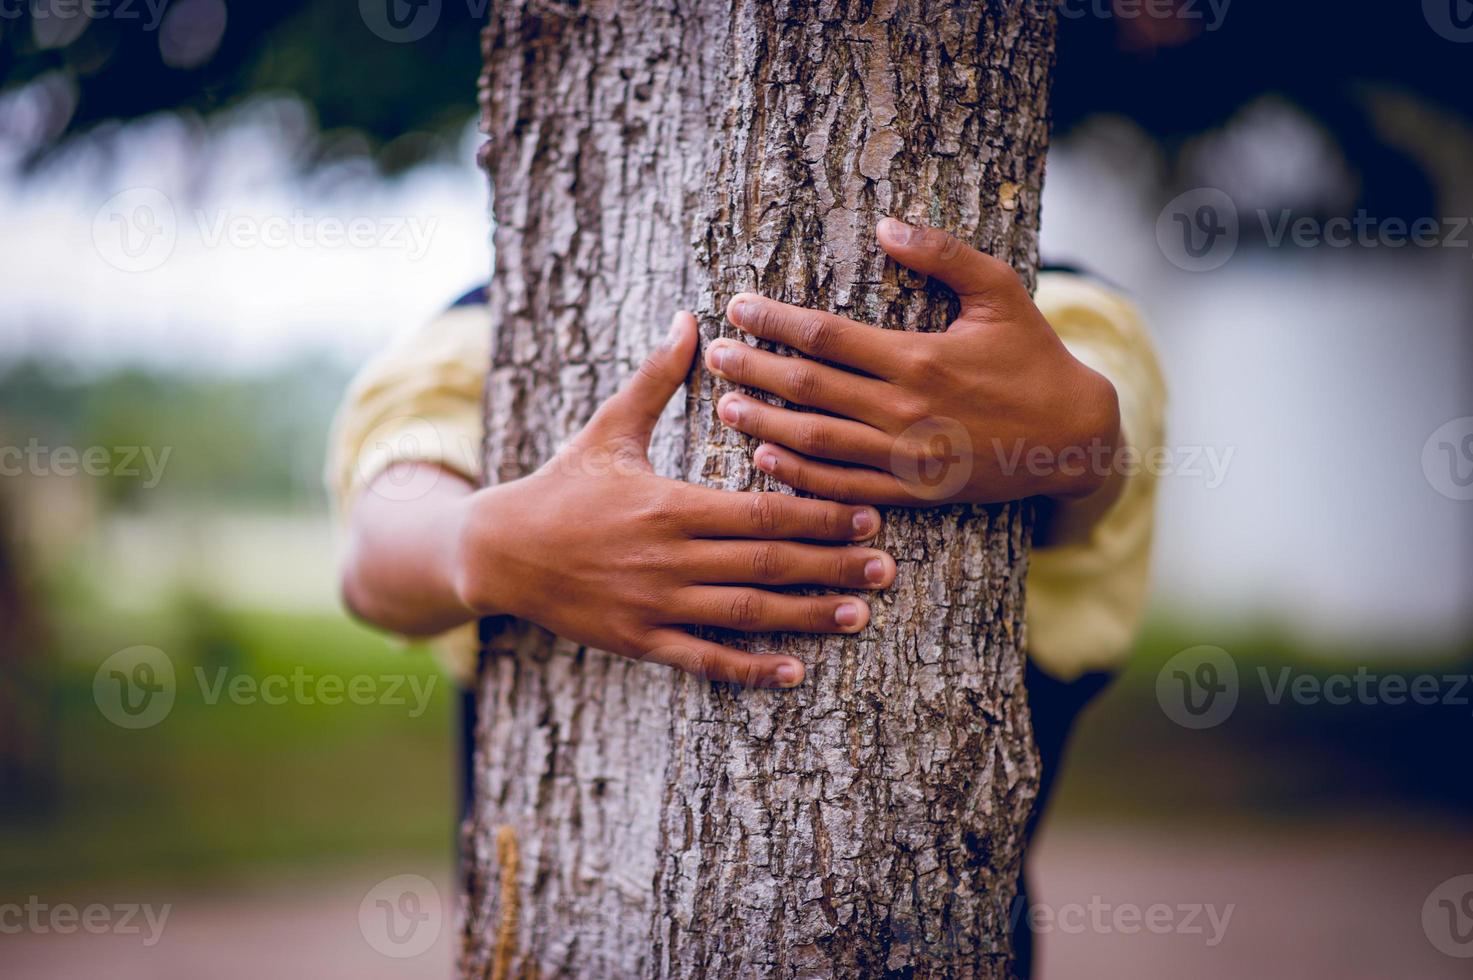 la imagen ha abrazado los árboles de los jóvenes que aman la naturaleza. concepto de cuidado natural foto